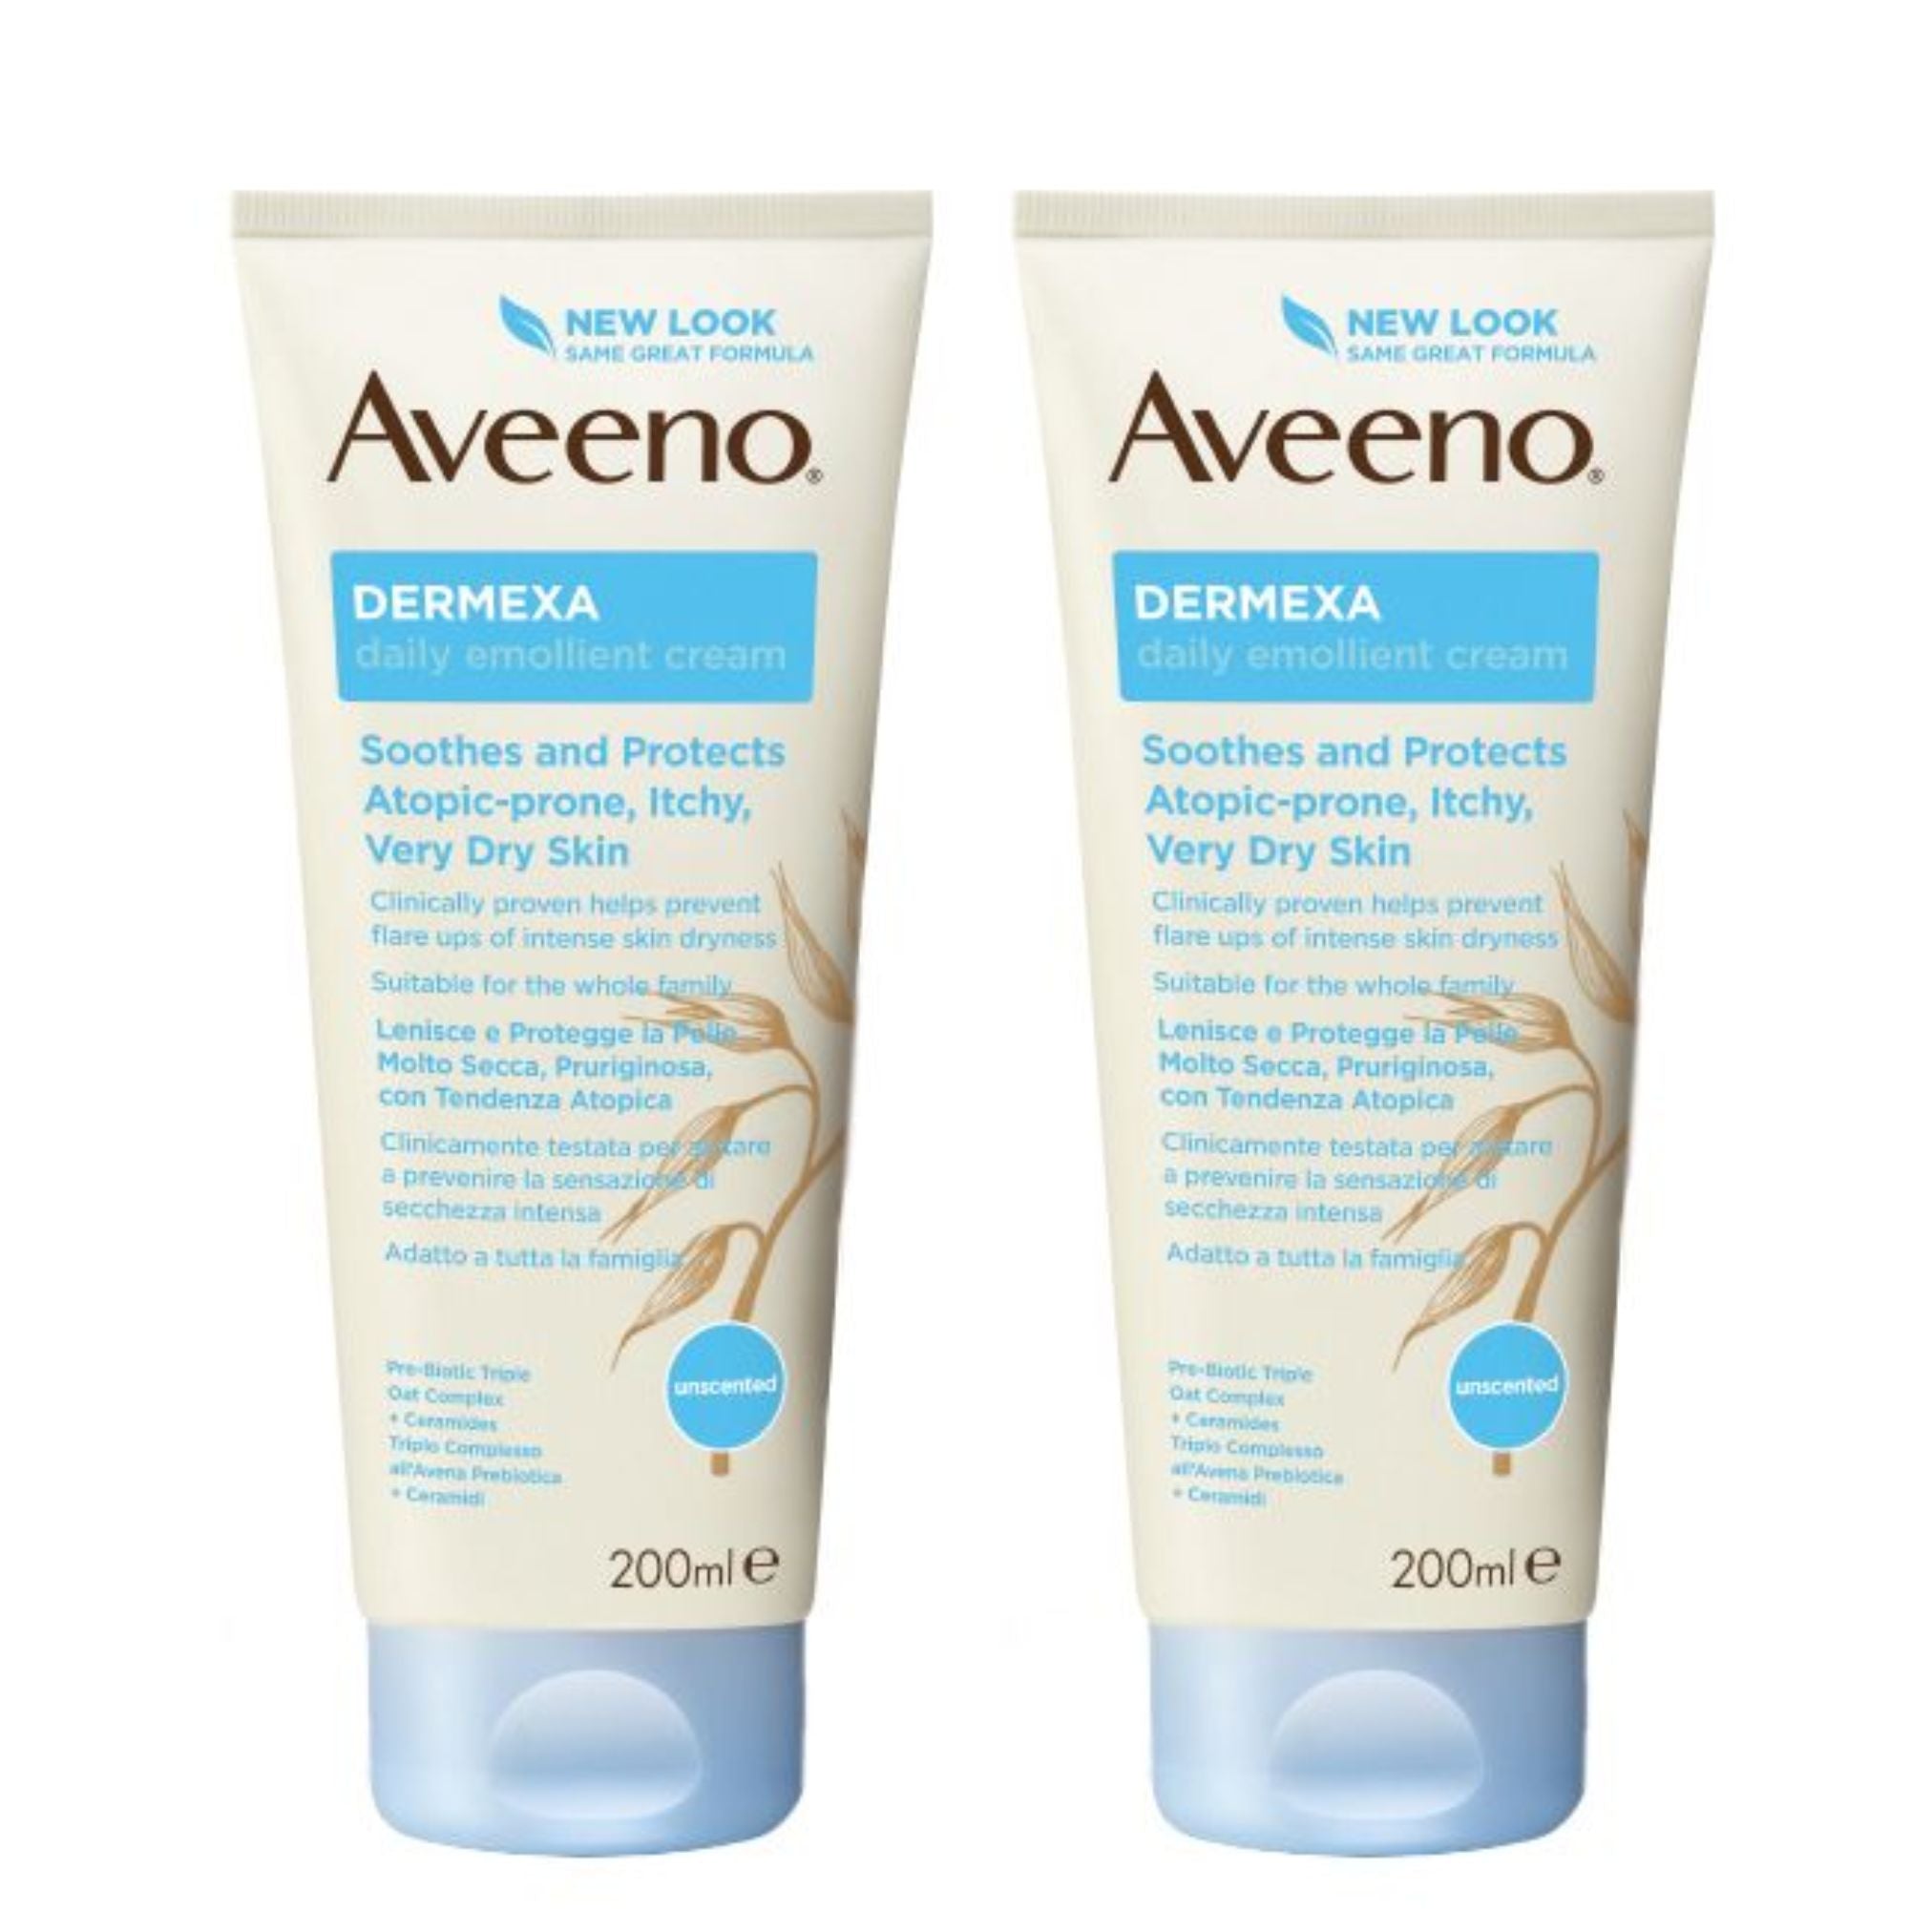 Aveeno Promo Pack: Aveeno Dermexa Emollient Cream 2x200ml